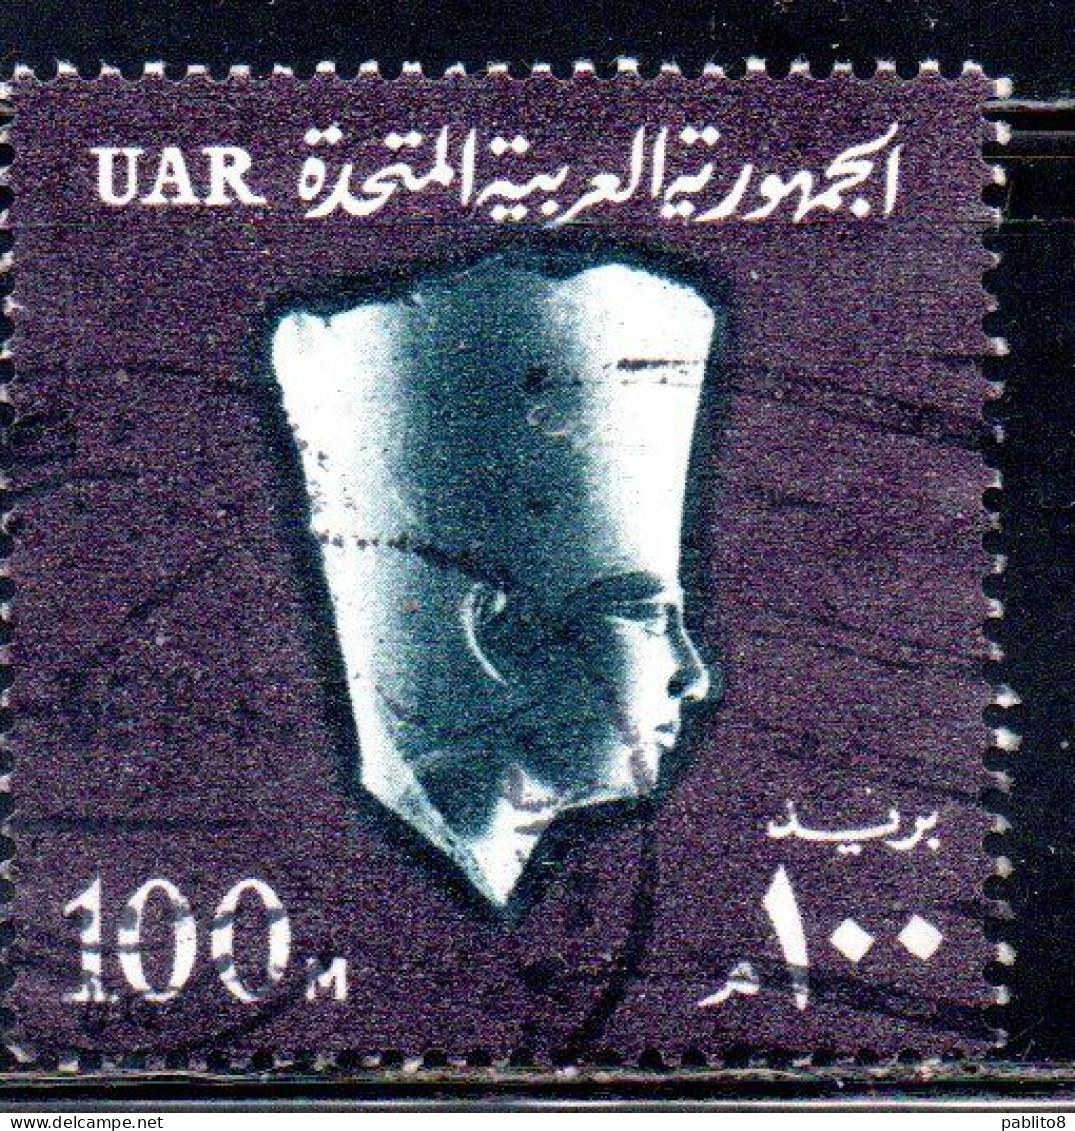 UAR EGYPT EGITTO 1964 1967 PHARAOH USERKAF 5th DYNASTY 100m USED USATO OBLITERE' - Gebruikt